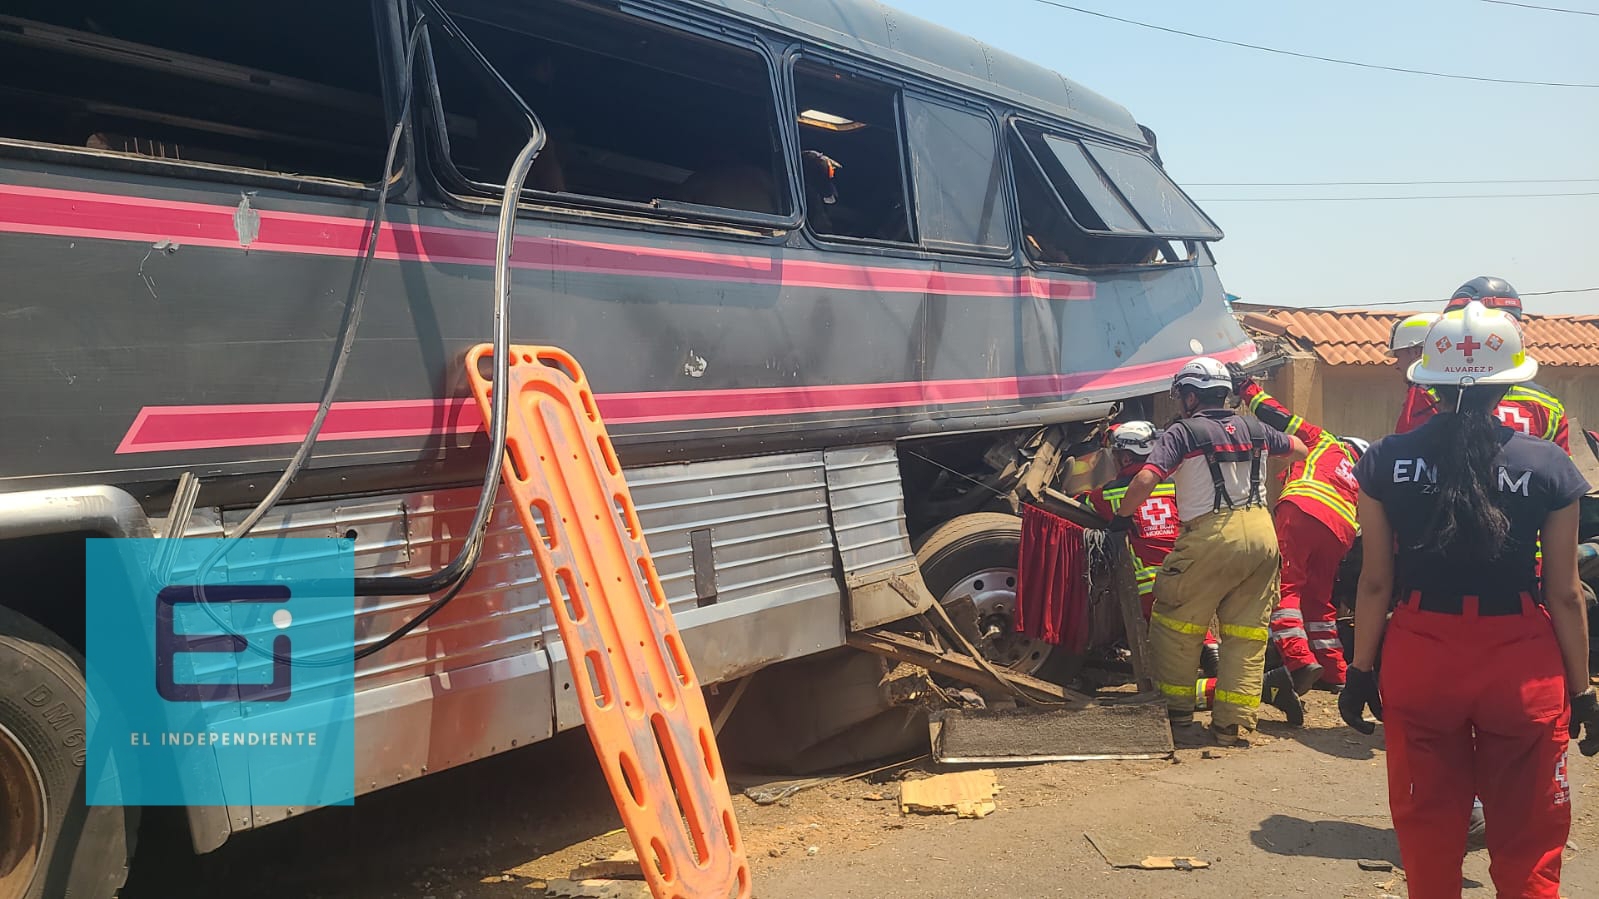 Se accidenta autobús de la banda musical 'La Traketera Ardiente'; hay 3 muertos